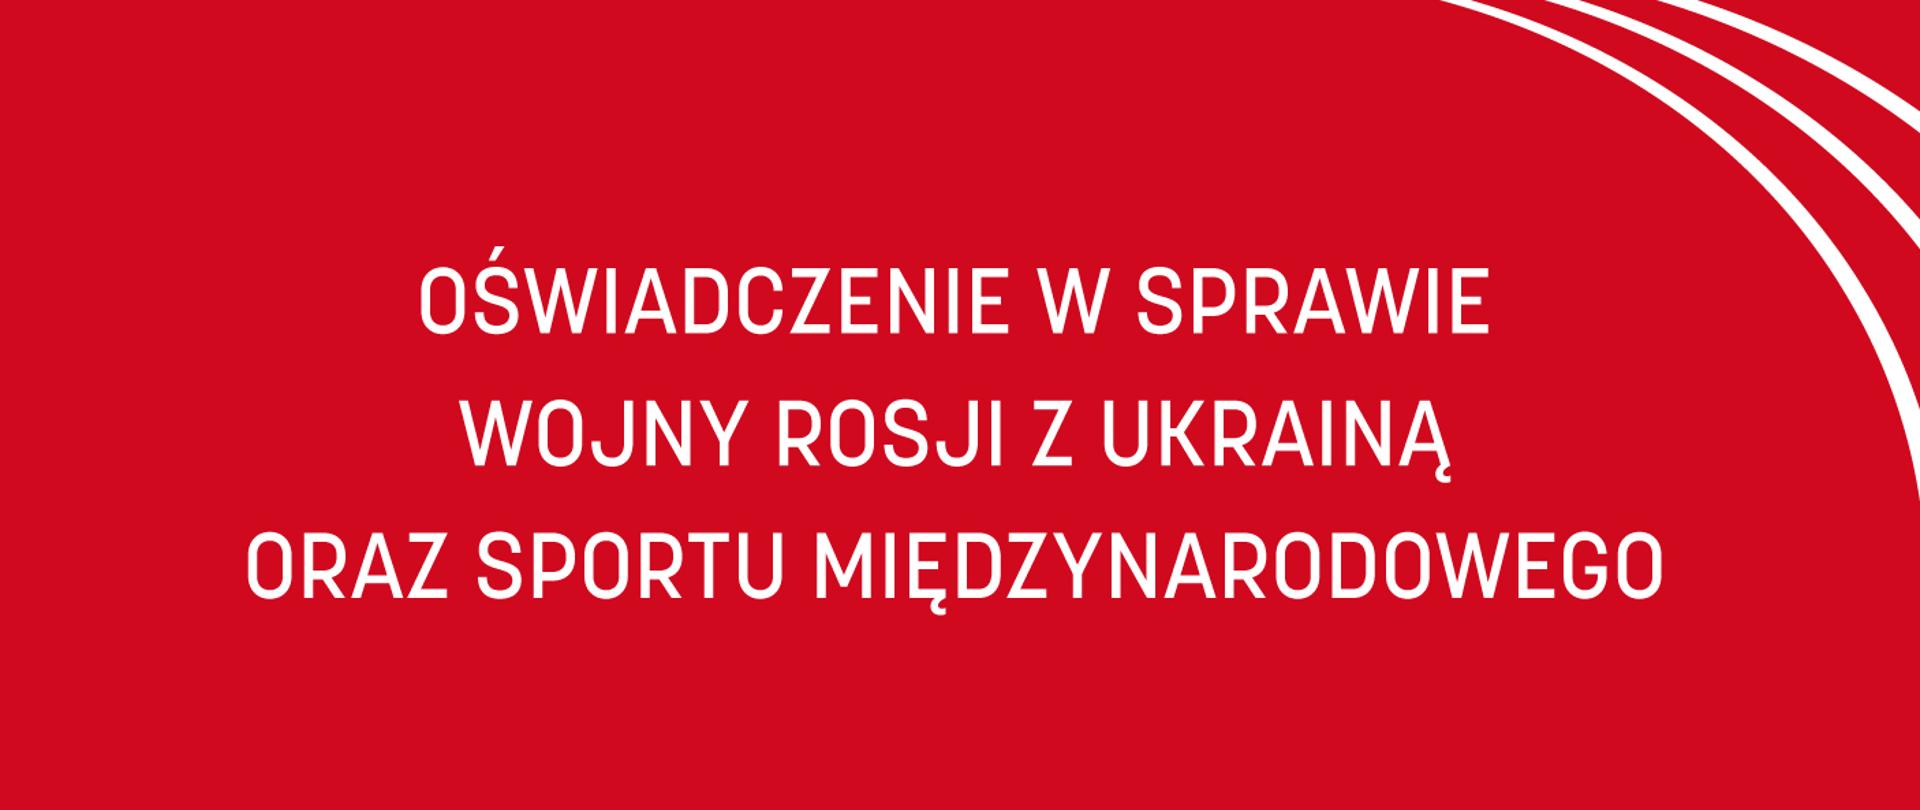 Czerwona grafika z równoległymi względem siebie białymi łukami w prawym górnym rogu oraz białym napisem: "Oświadczenie w sprawie wojny Rosji z Ukrainą oraz sportu międzynarodowego"